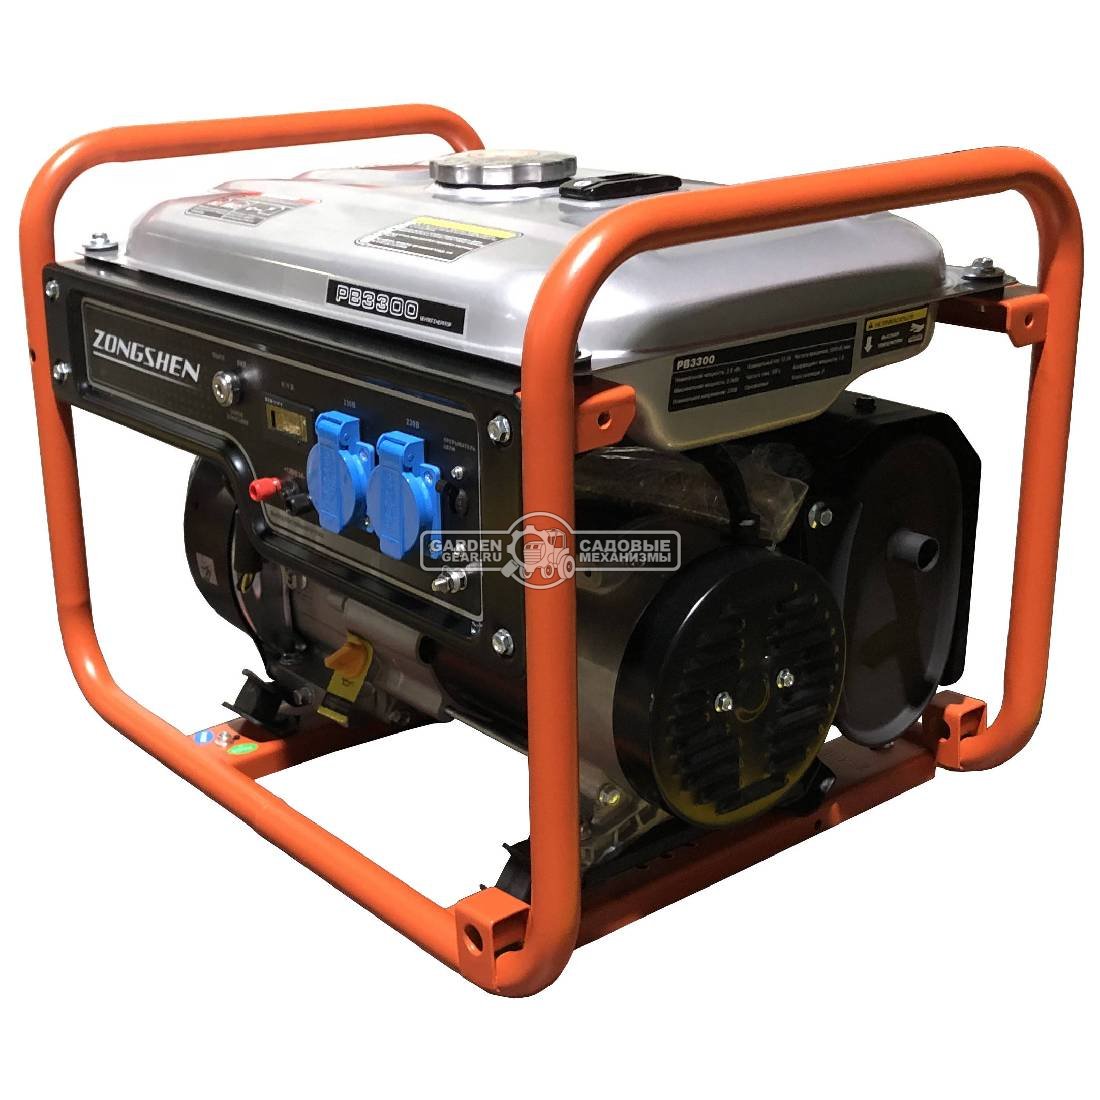 Бензиновый генератор Zongshen Standart PB 3300 (PRC, 208 см3, 2.8/3.0 кВт, 15 л, 44 кг)